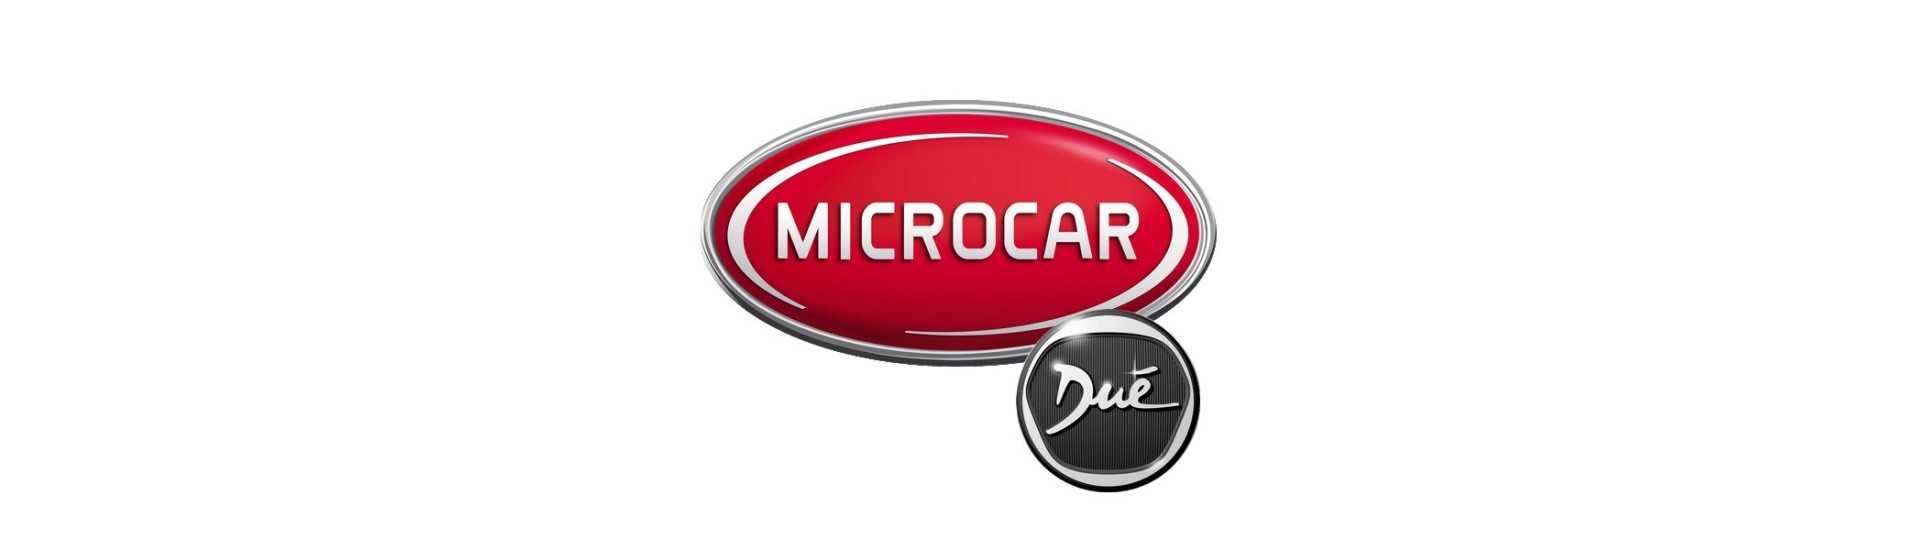 Det bästa priset för bil utan körkort Microcar Dué